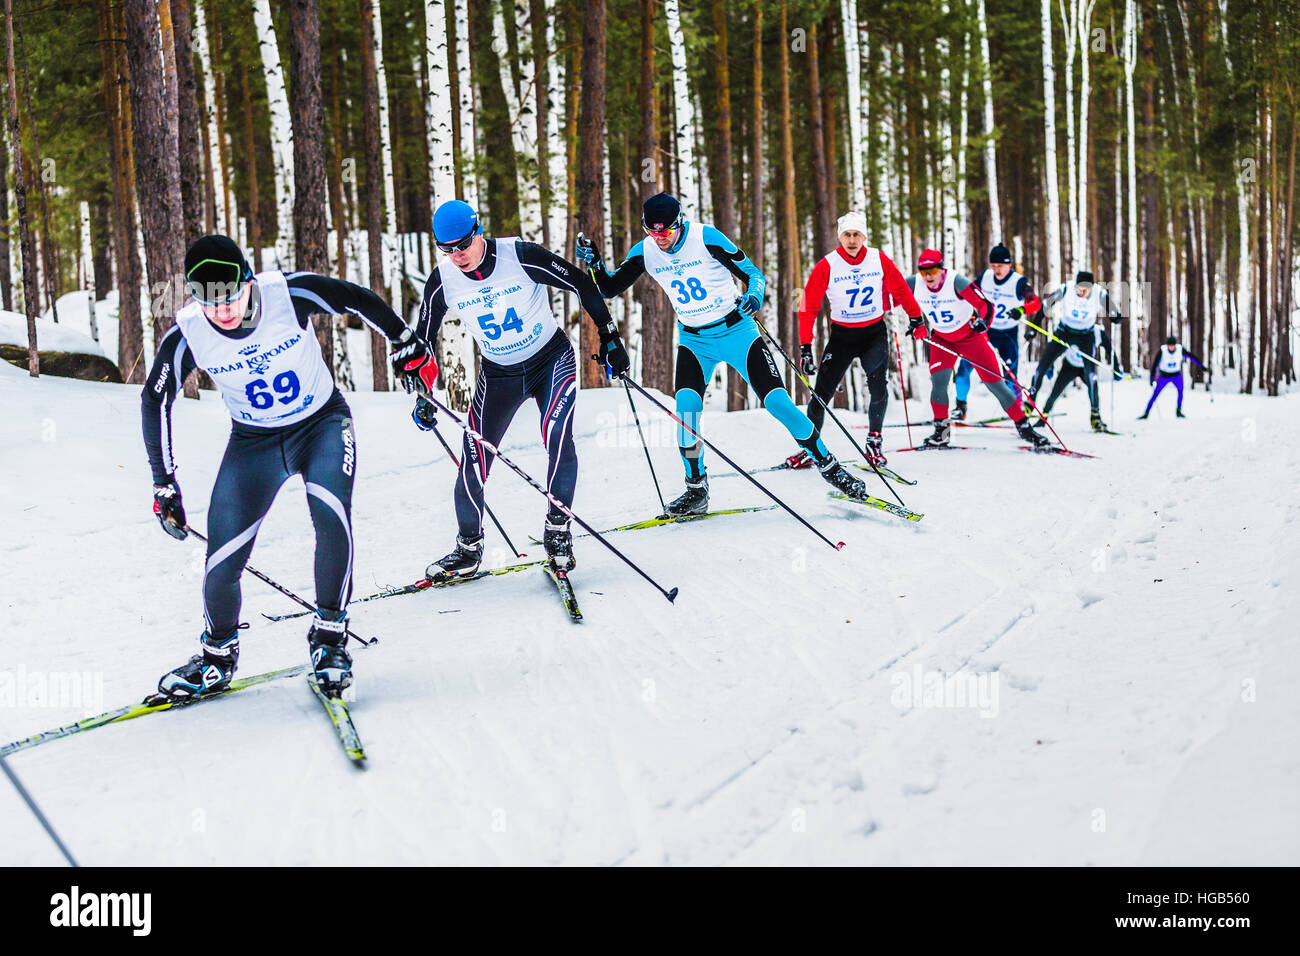 Groupe de skieurs athlètes hommes en style libre des forêts en amont pendant le championnat de ski de fond Banque D'Images